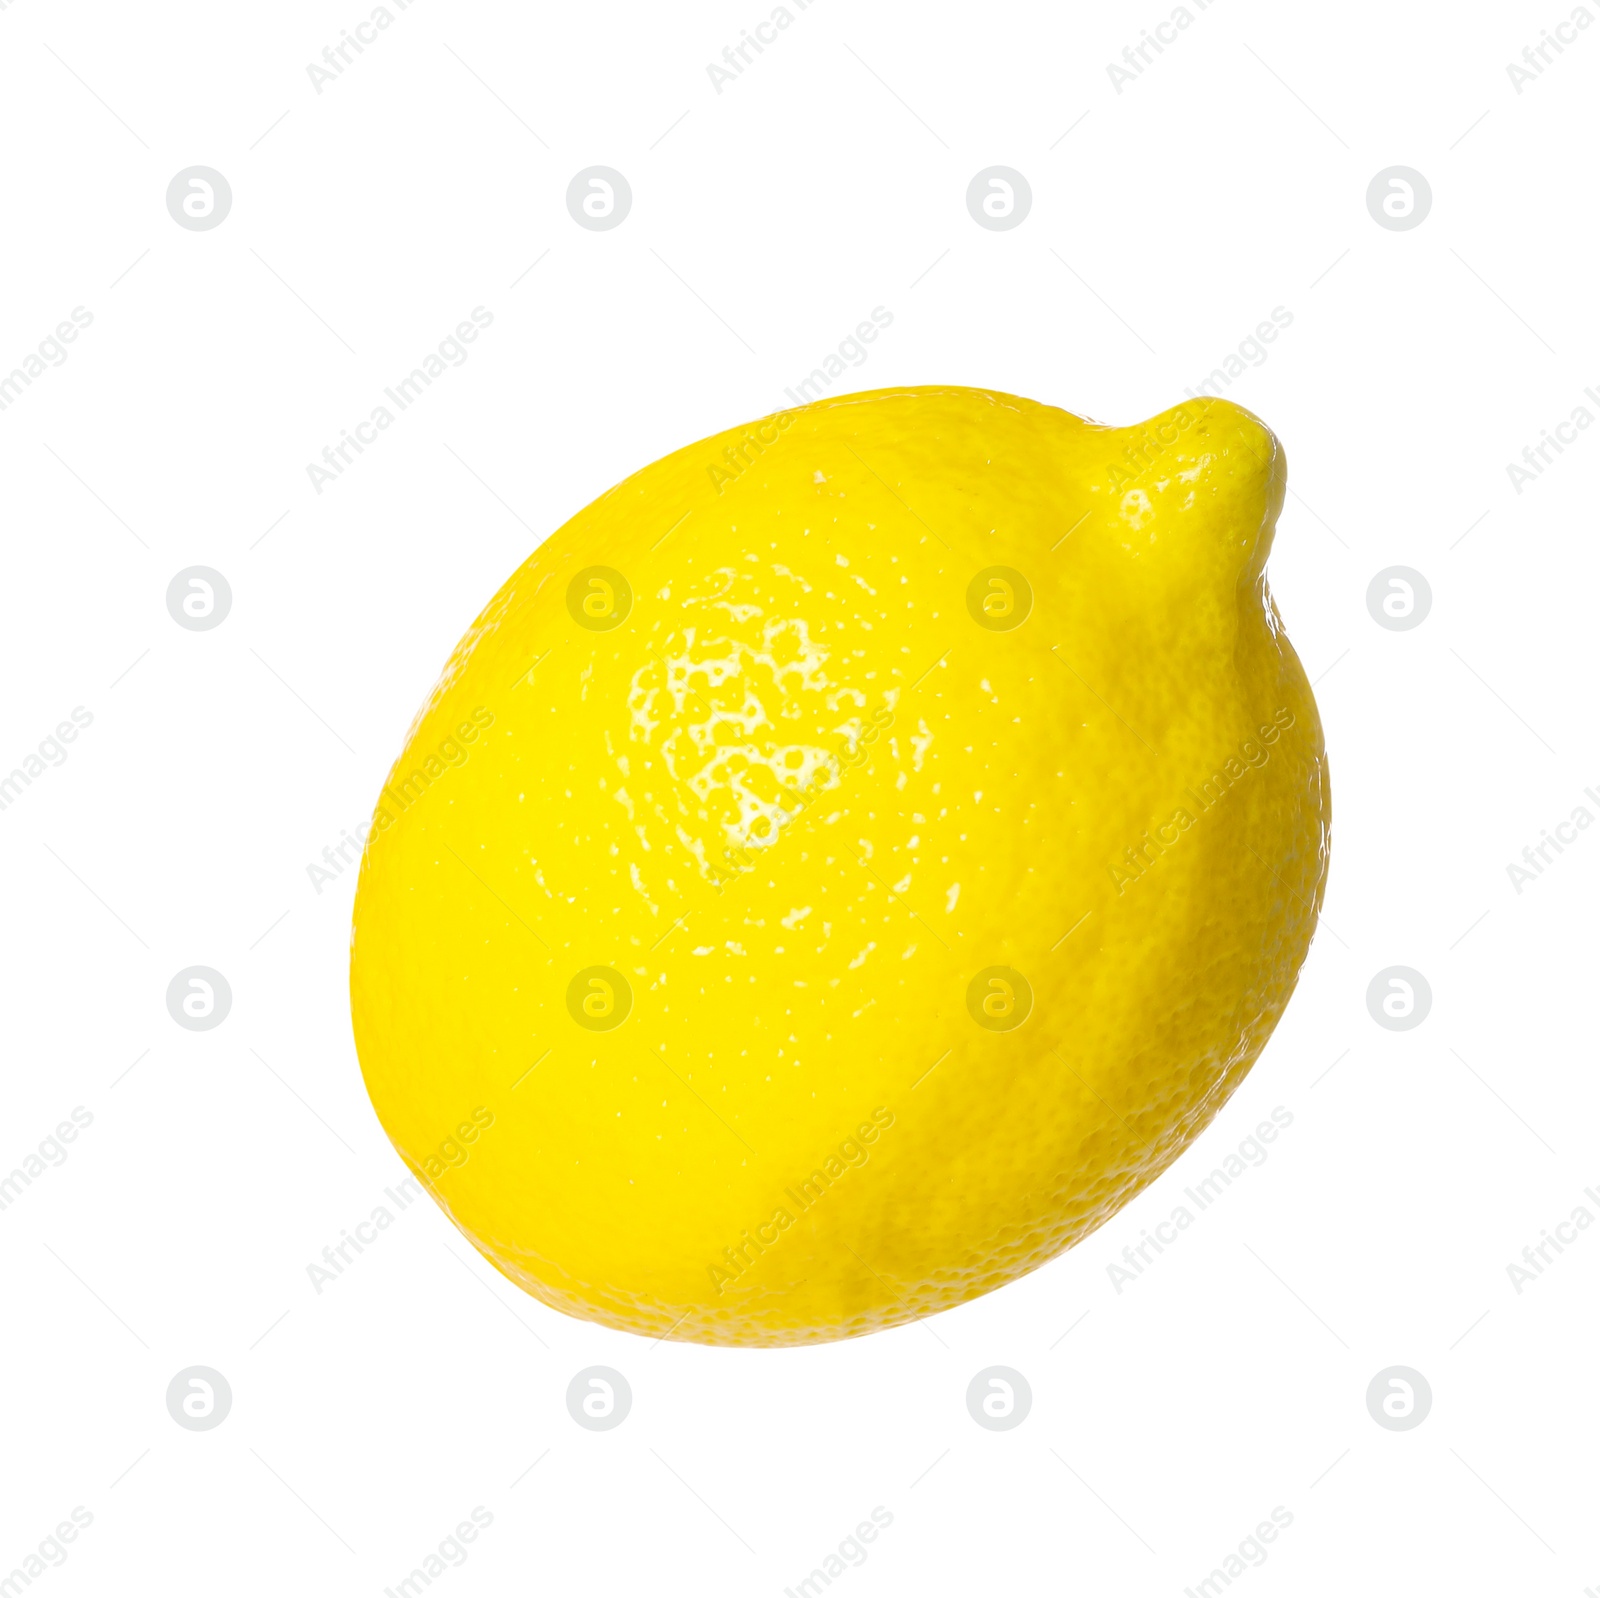 Photo of Fresh ripe whole lemon isolated on white